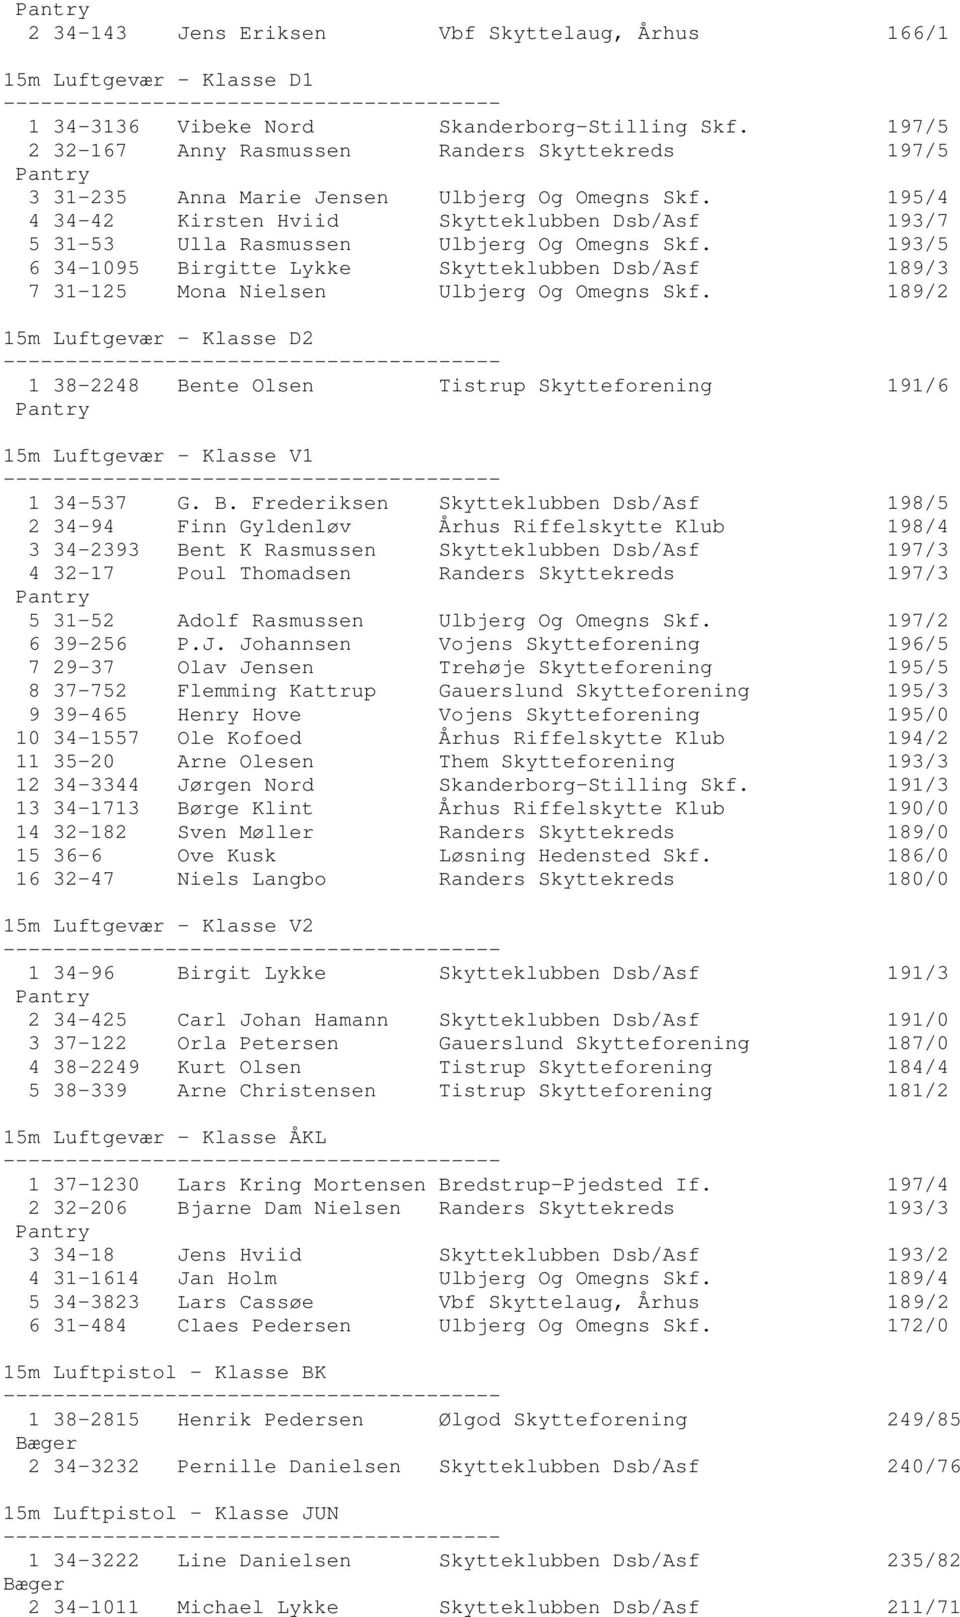 195/4 4 34-42 Kirsten Hviid Skytteklubben Dsb/Asf 193/7 5 31-53 Ulla Rasmussen Ulbjerg Og Omegns Skf.